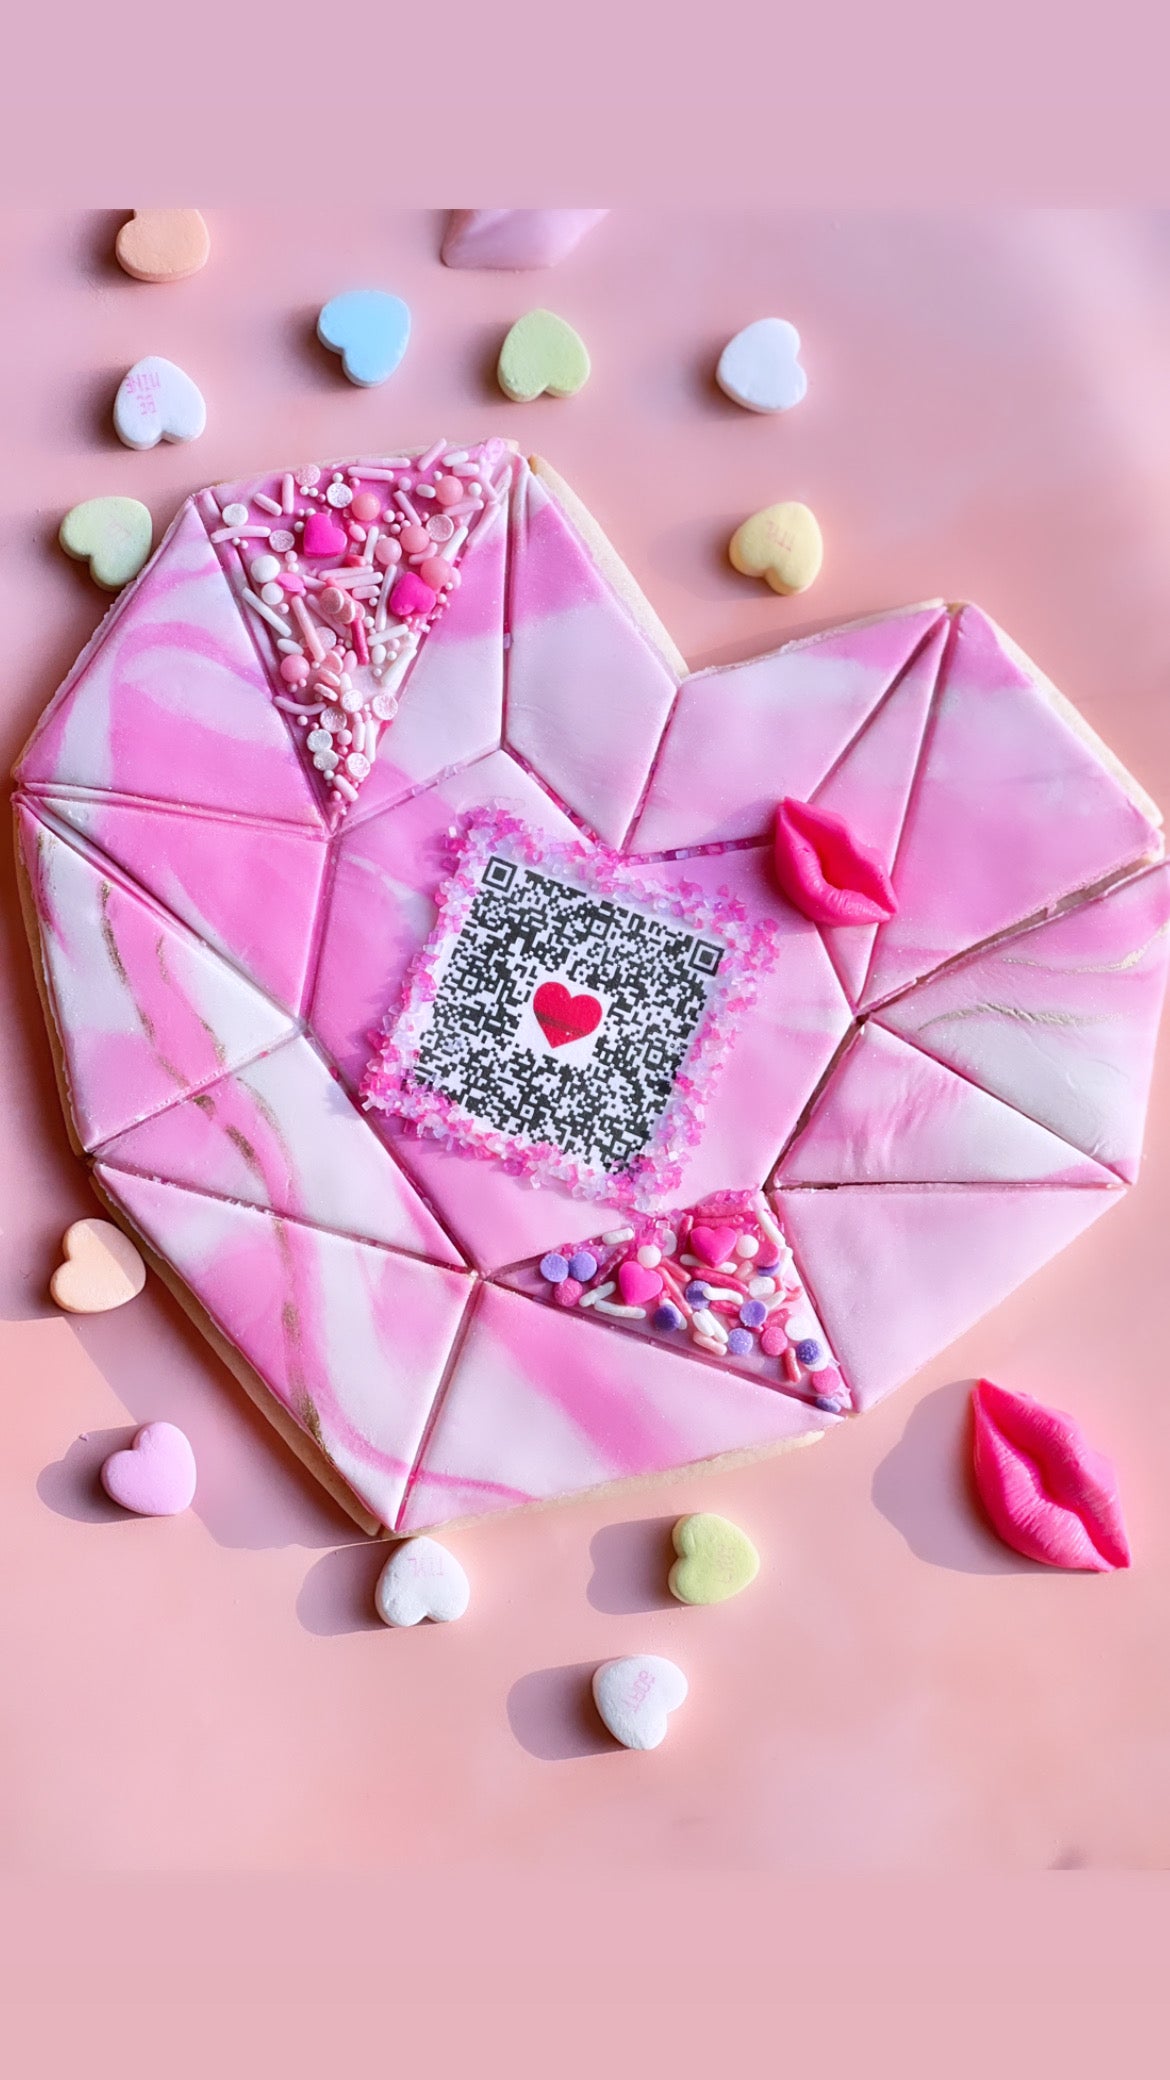 SONG Geode Valentine Heart Cookie